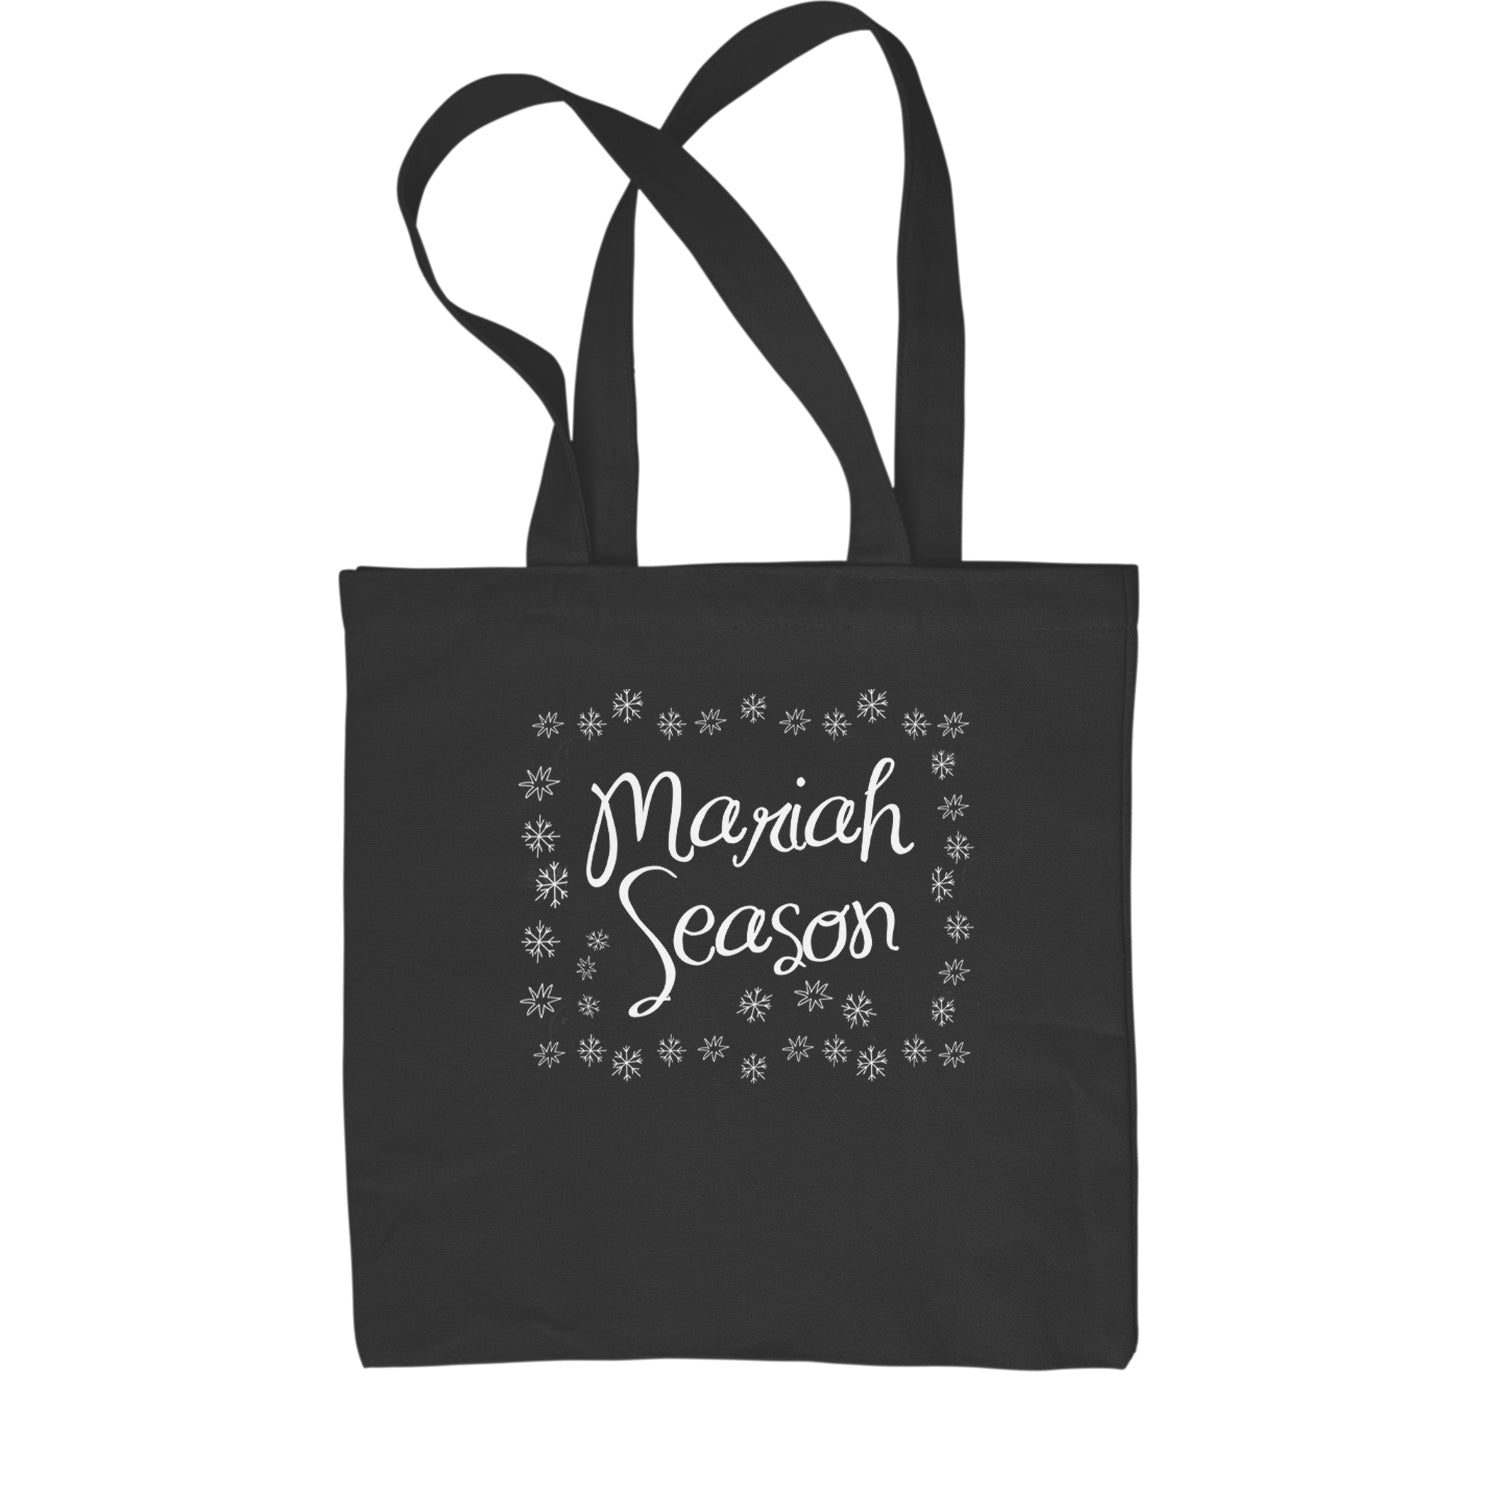 Mariah Season Christmas Holiday Shopping Tote Bag